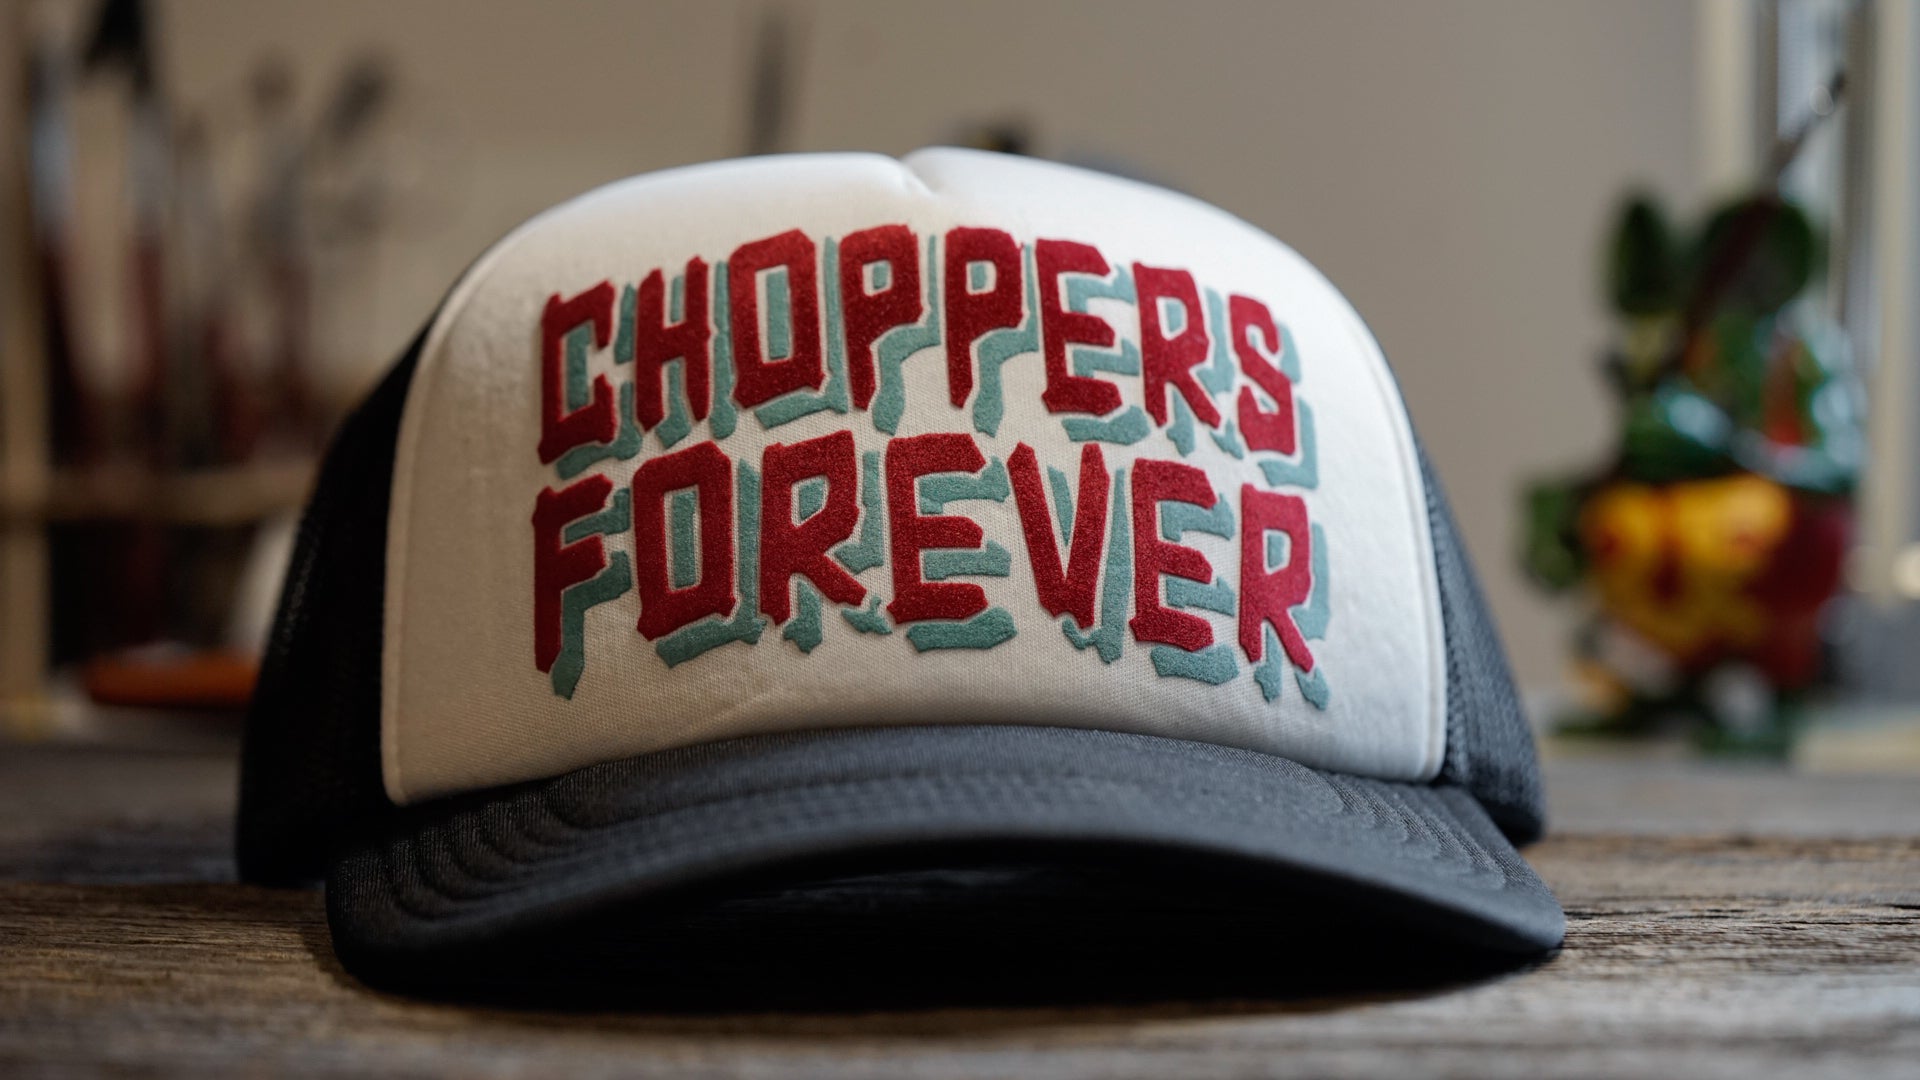 Choppers forever - trucker cap